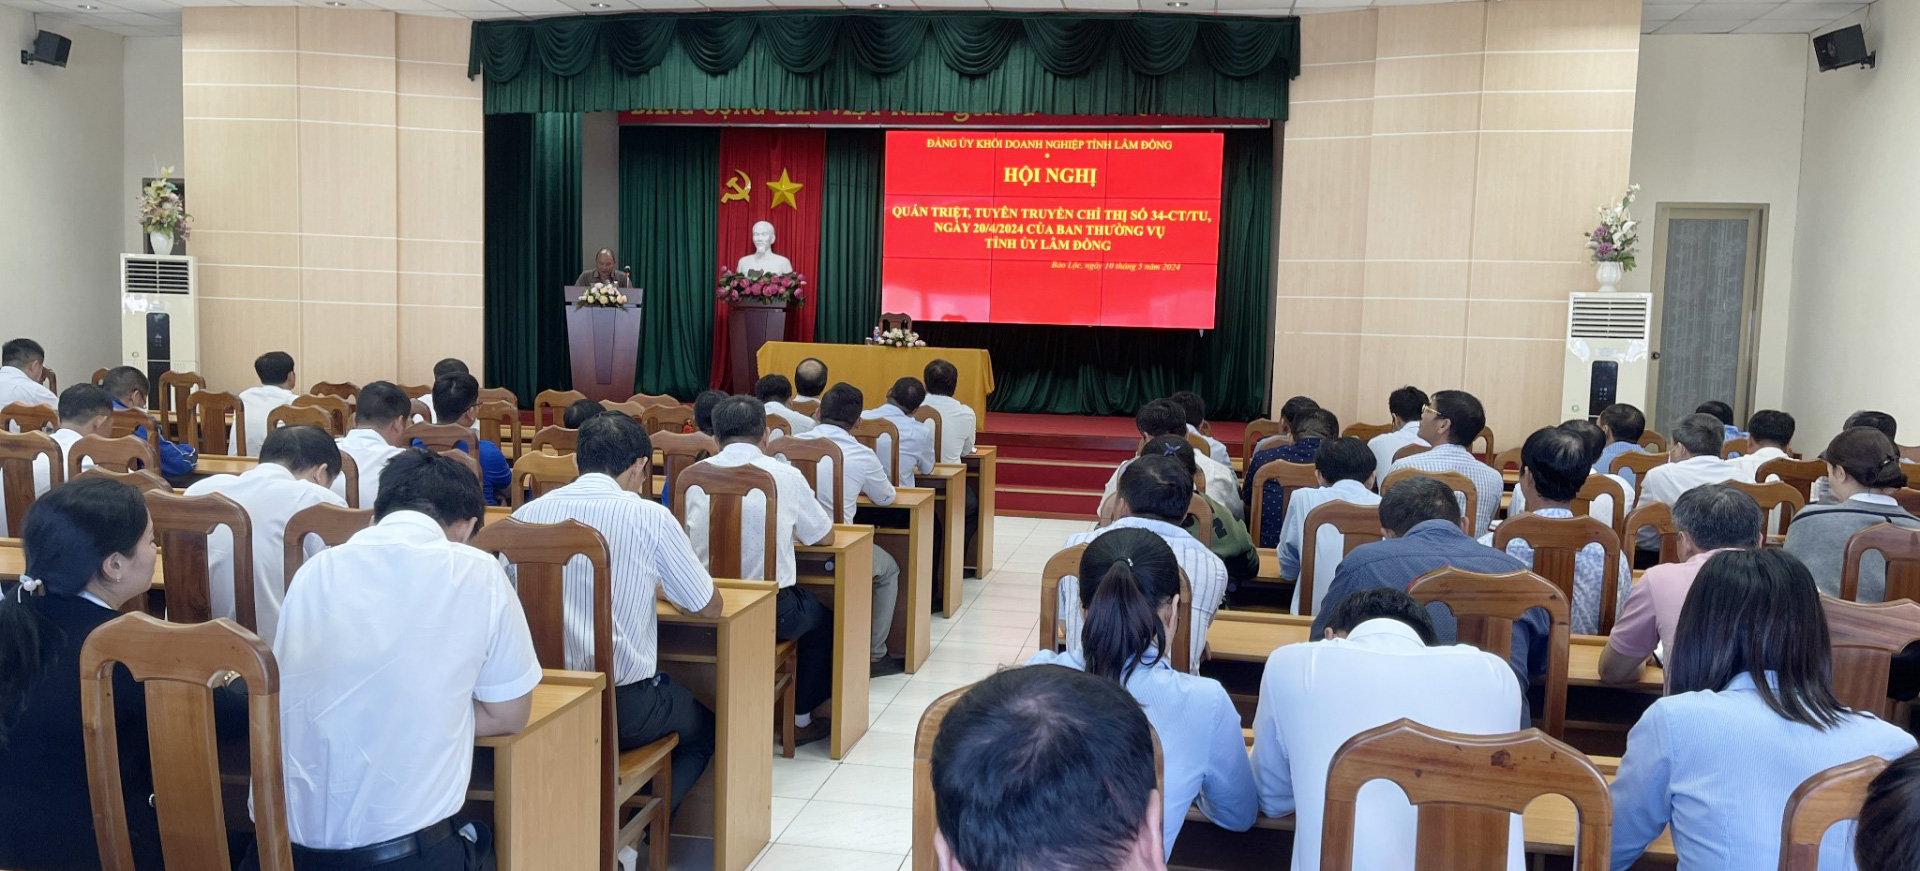 Cán bộ, đảng viên tham dự hội nghị tại Hội trường Điện lực Bảo Lộc